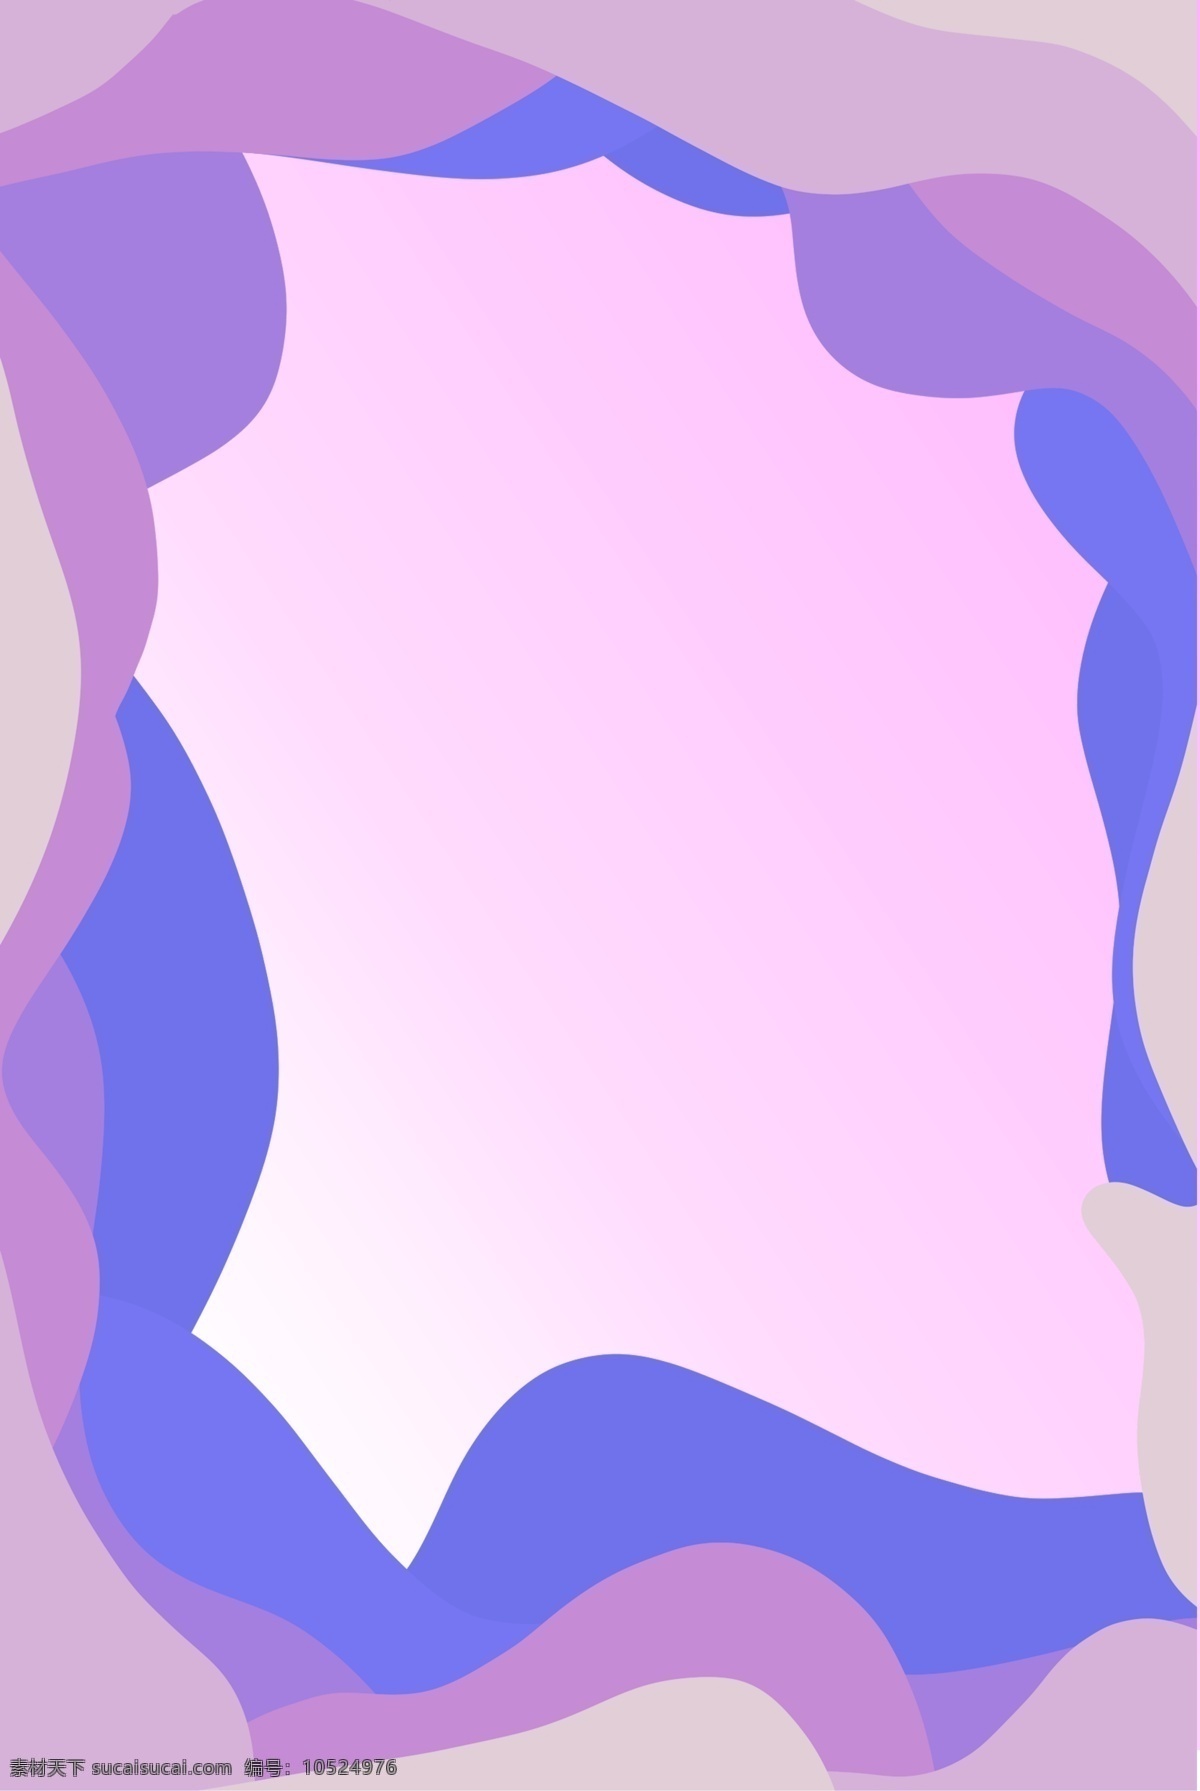 彩色 可爱 紫色 波浪 边框 海报 背景 边框纹理 拼接 扭曲 延伸渐变 彩色波浪 剪纸风 彩色拼接背景 边框纹理背景